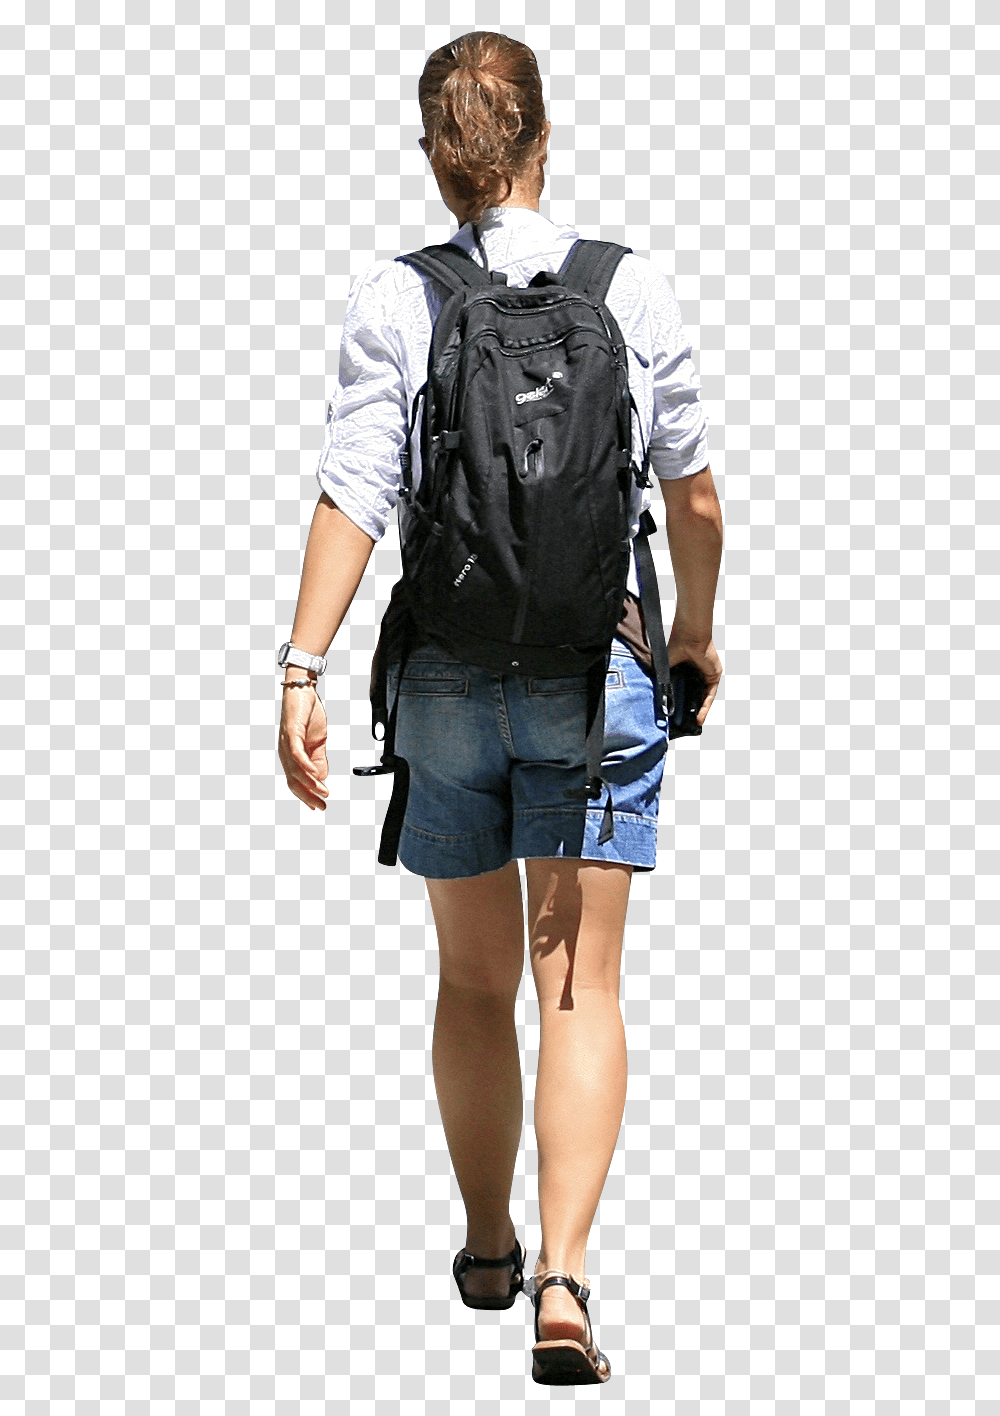 Person Walking Away Download Walking Away People Walking, Shorts, Pants, Jeans Transparent Png